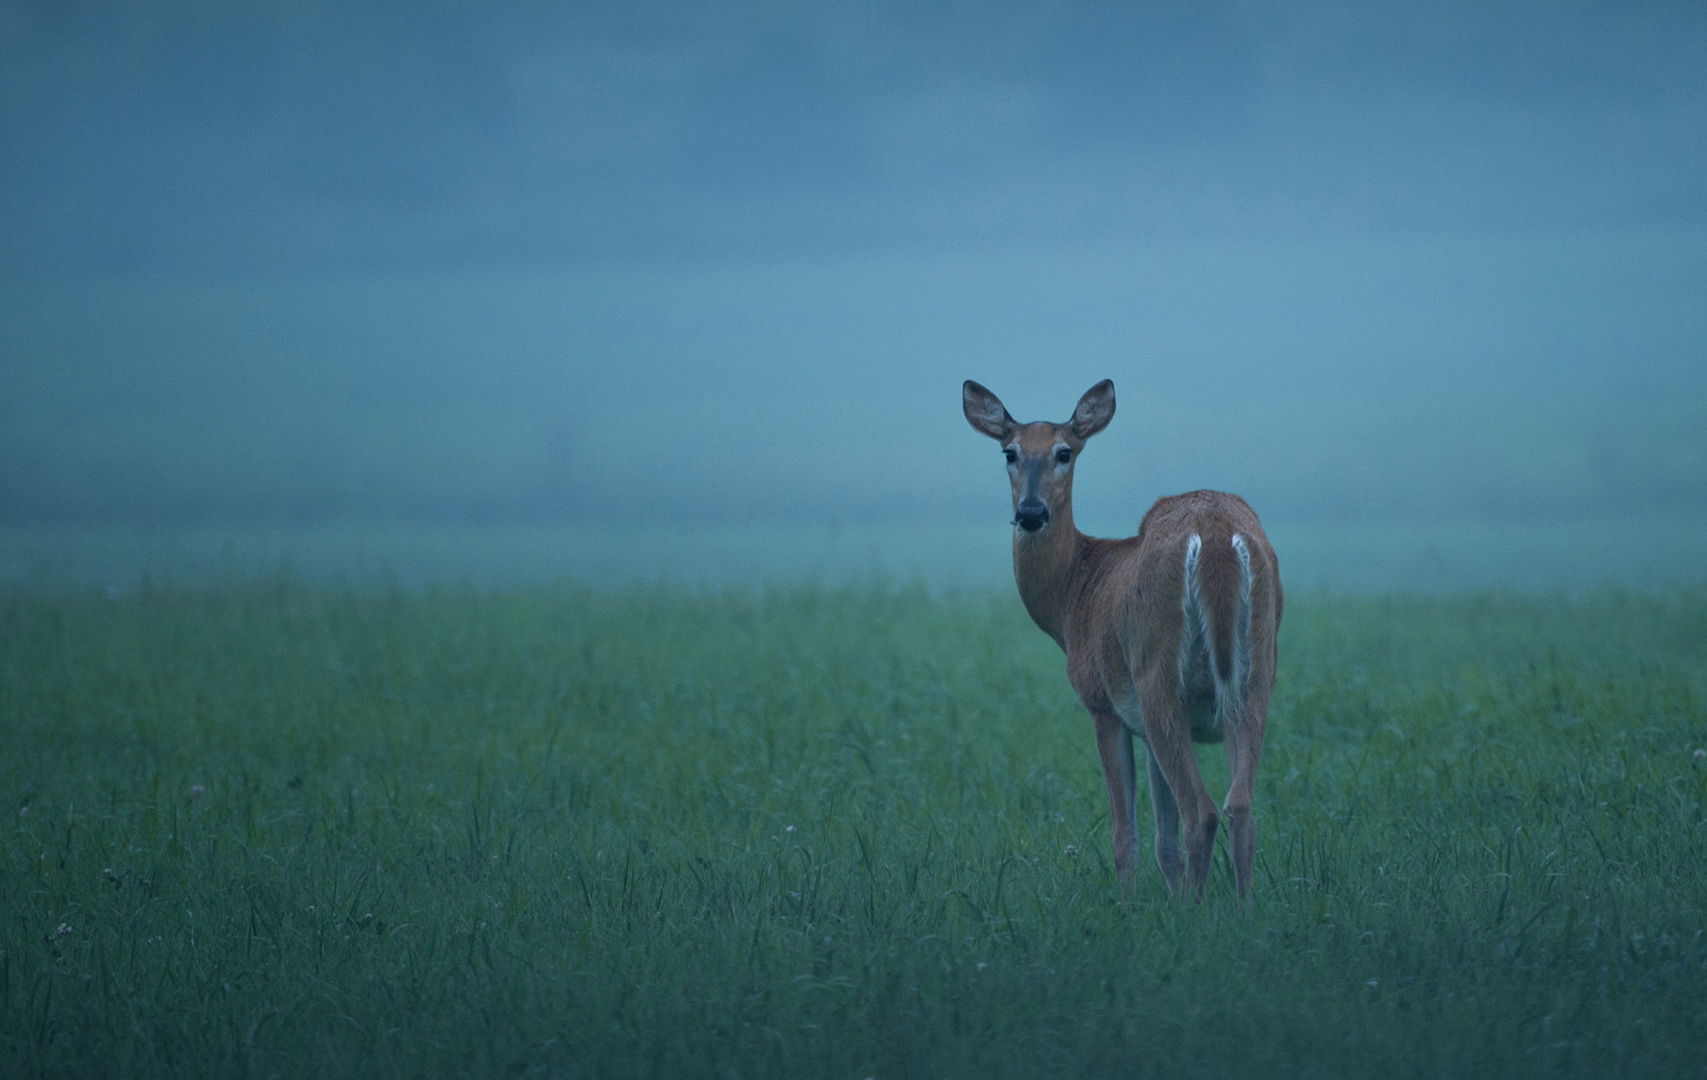 Deer on the foggy field (Leena-Maija Lindqvist)